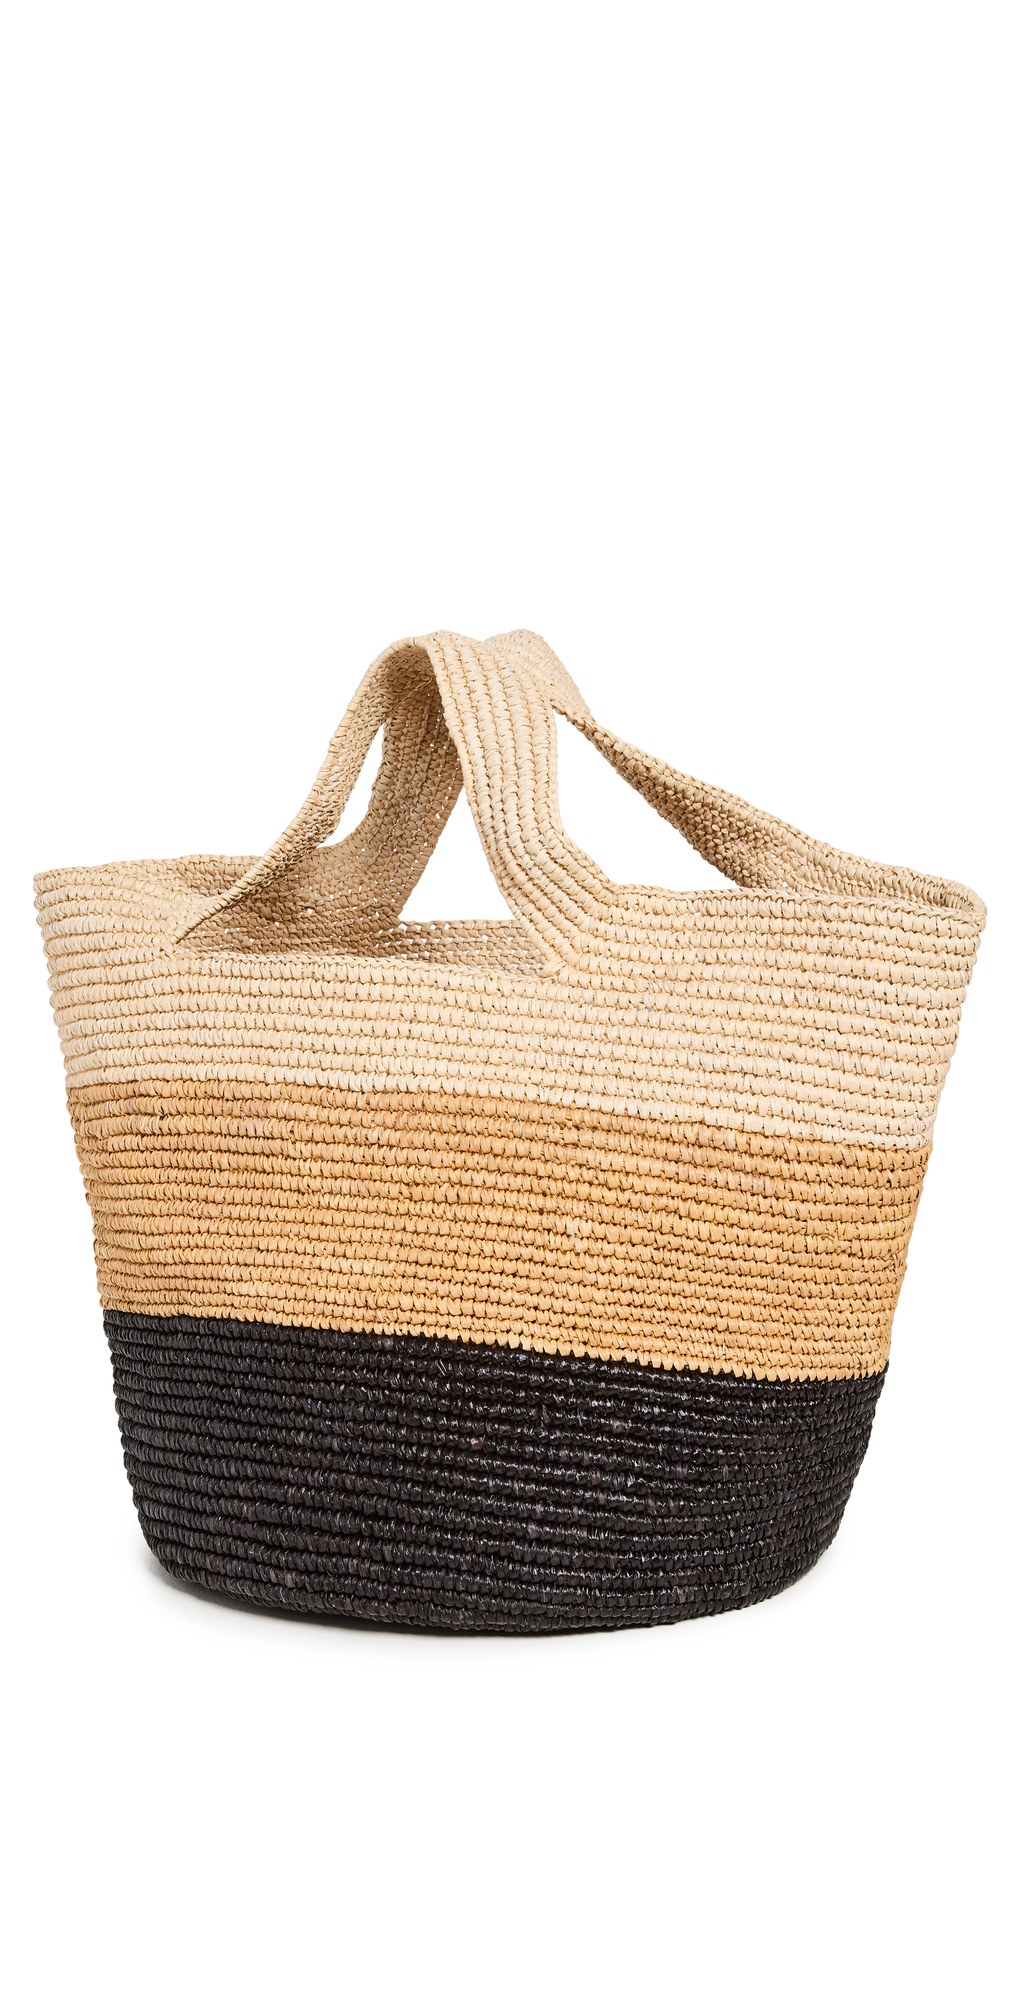 Sensi Studio Striped Bolso Playero Soft Woven Carry Tote in black / natural / beige